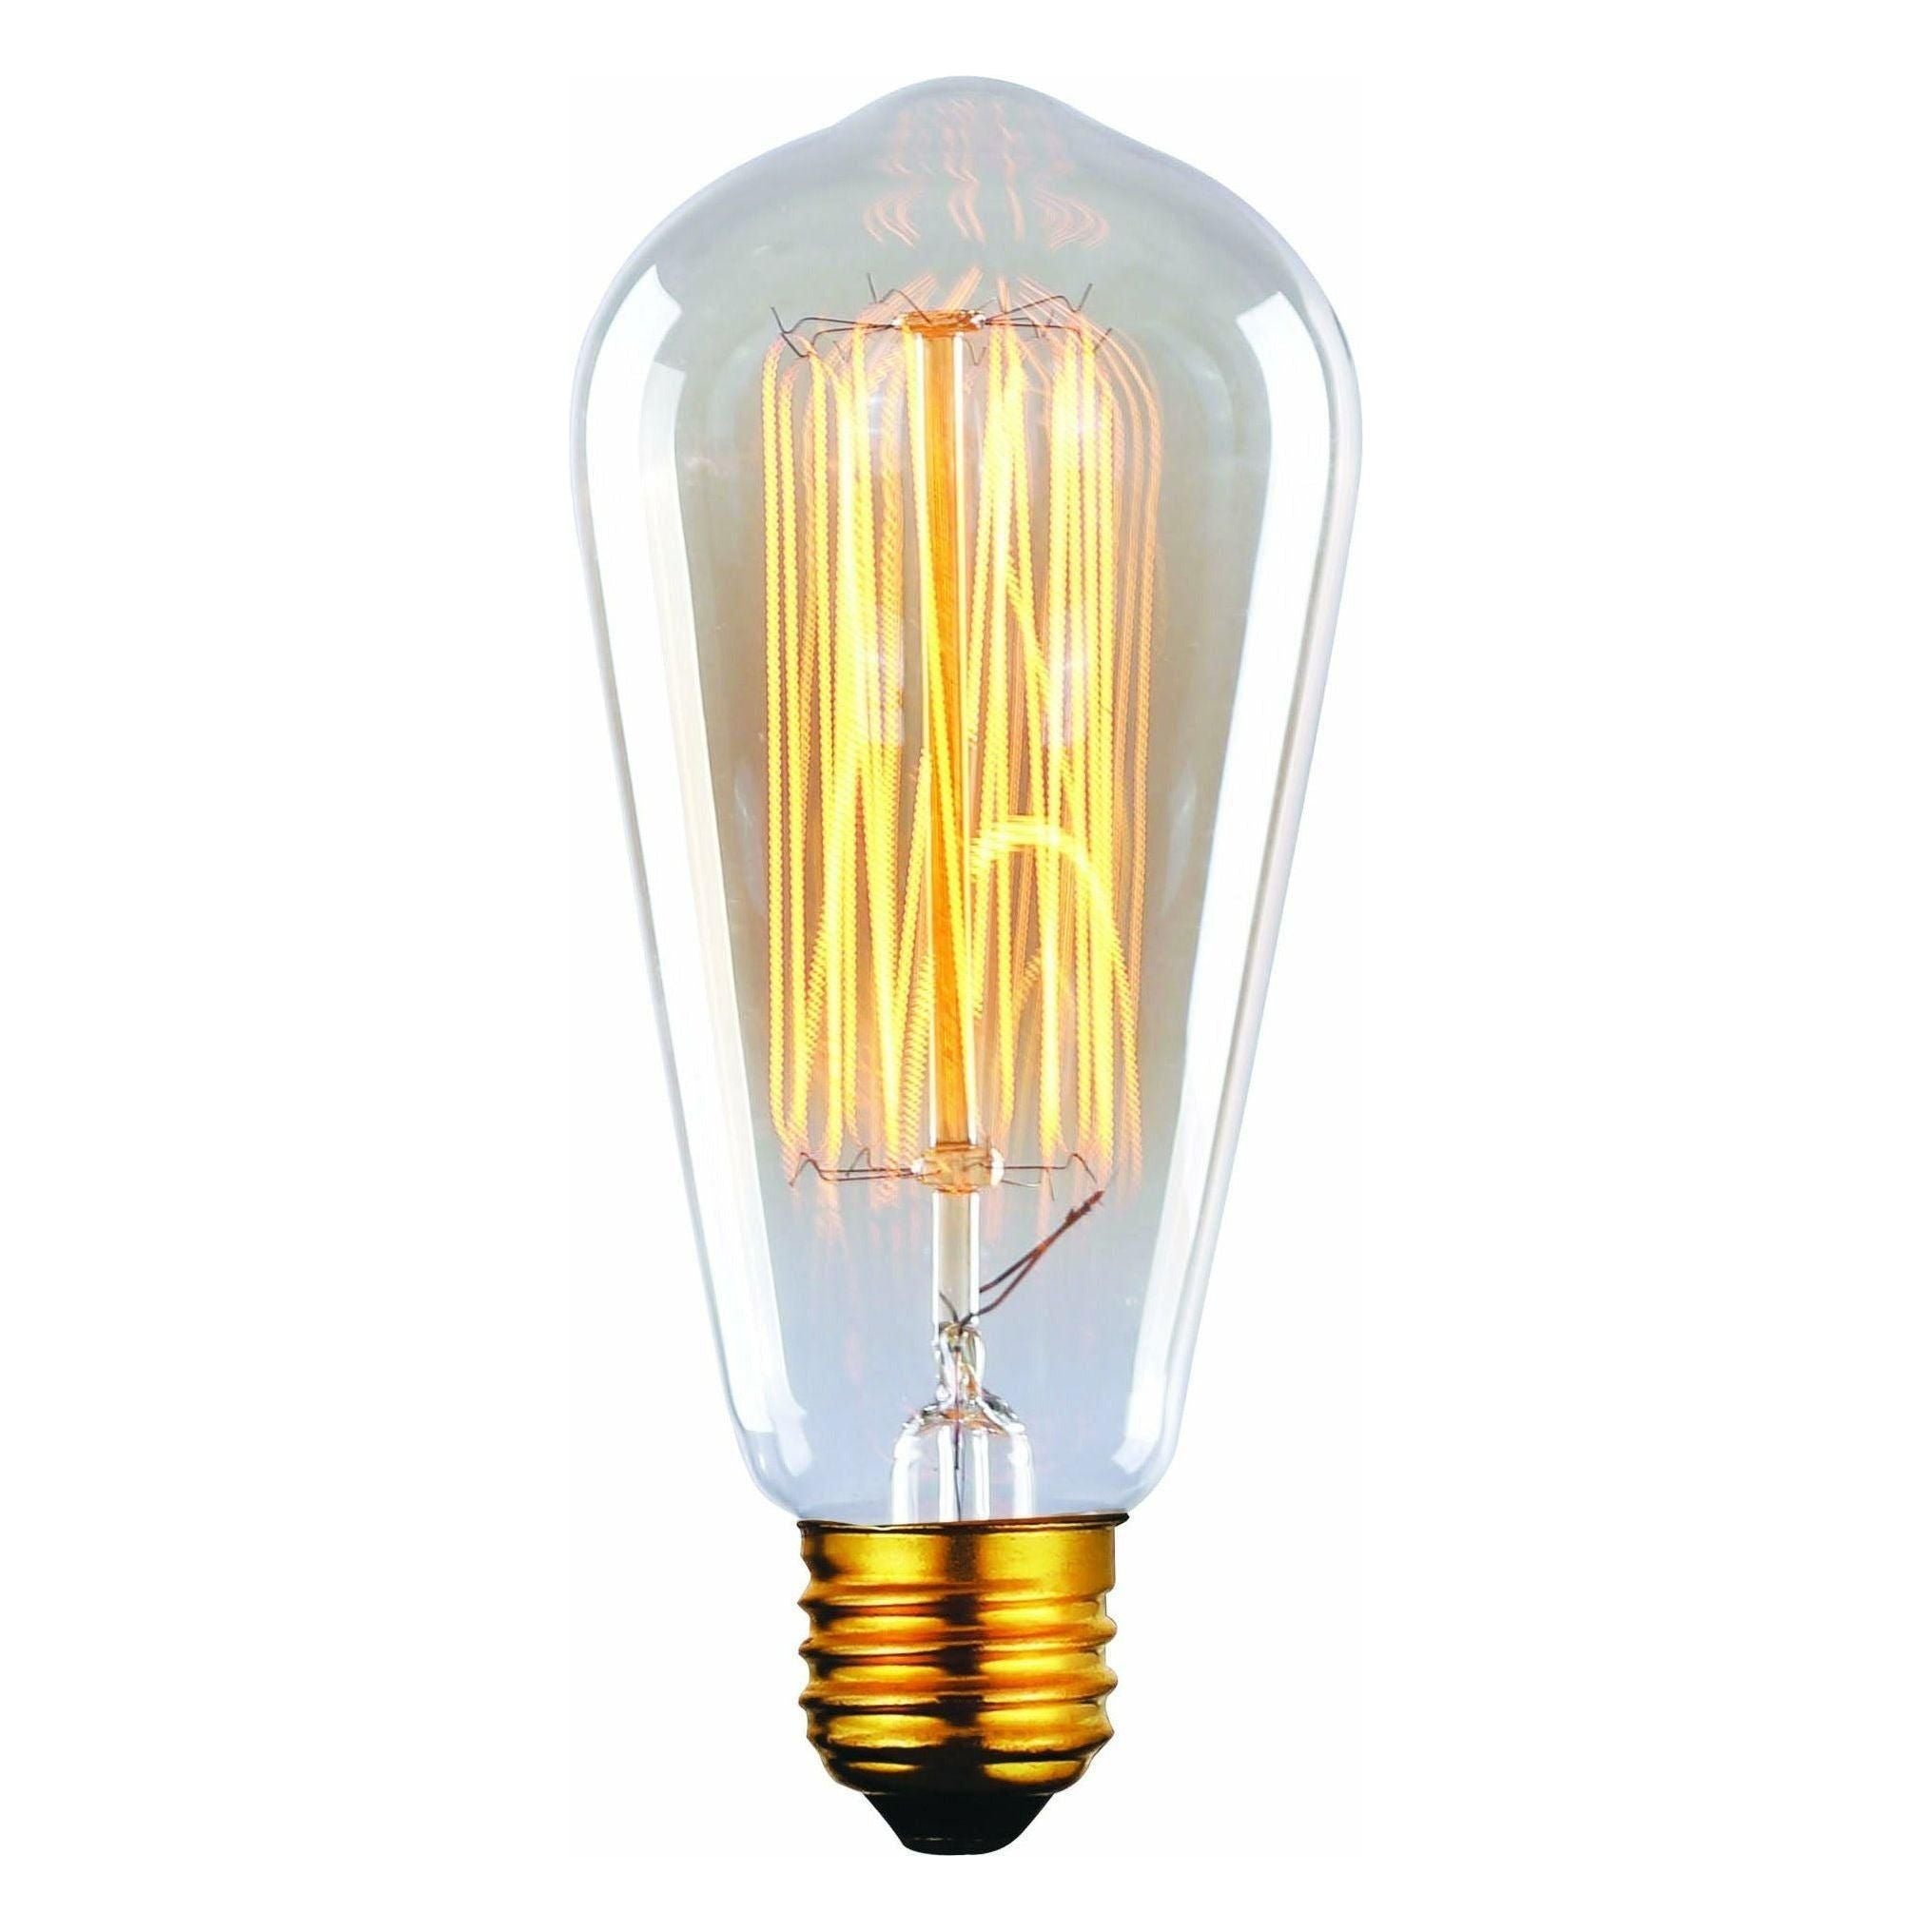 Canarm - Canarm Edison Bulb - Lights Canada